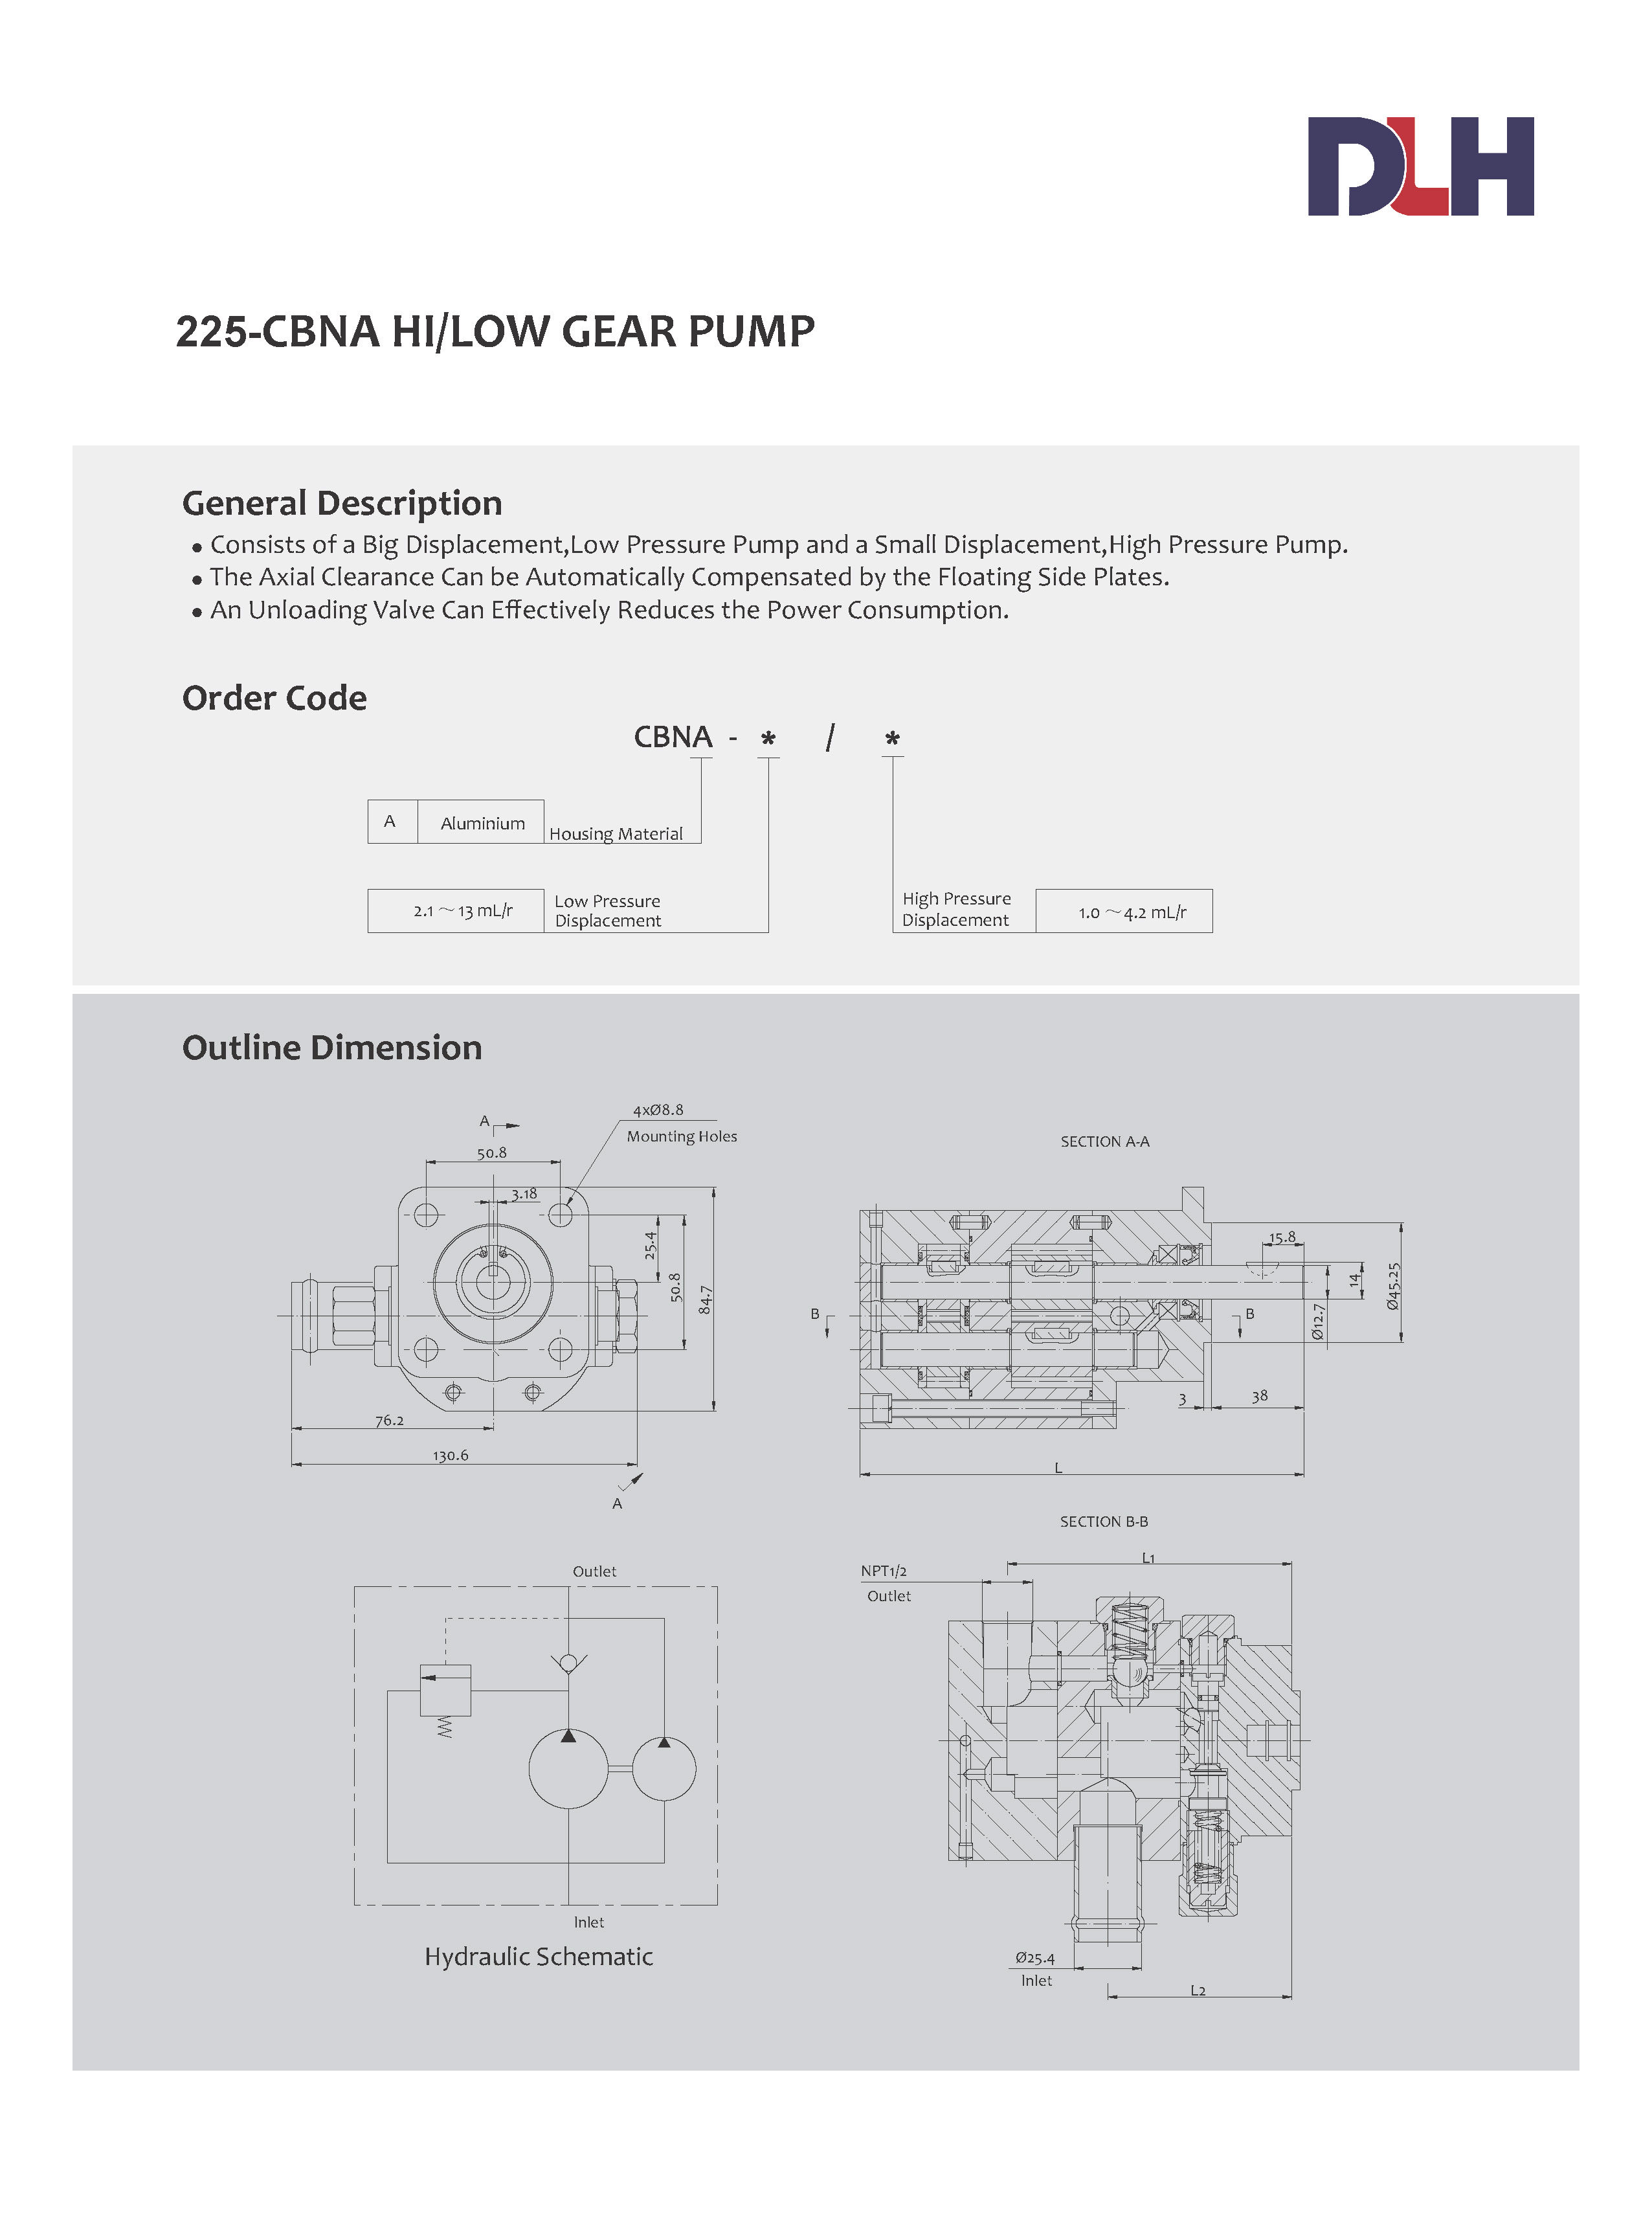 CBNA Hi/Low Gear Pumps